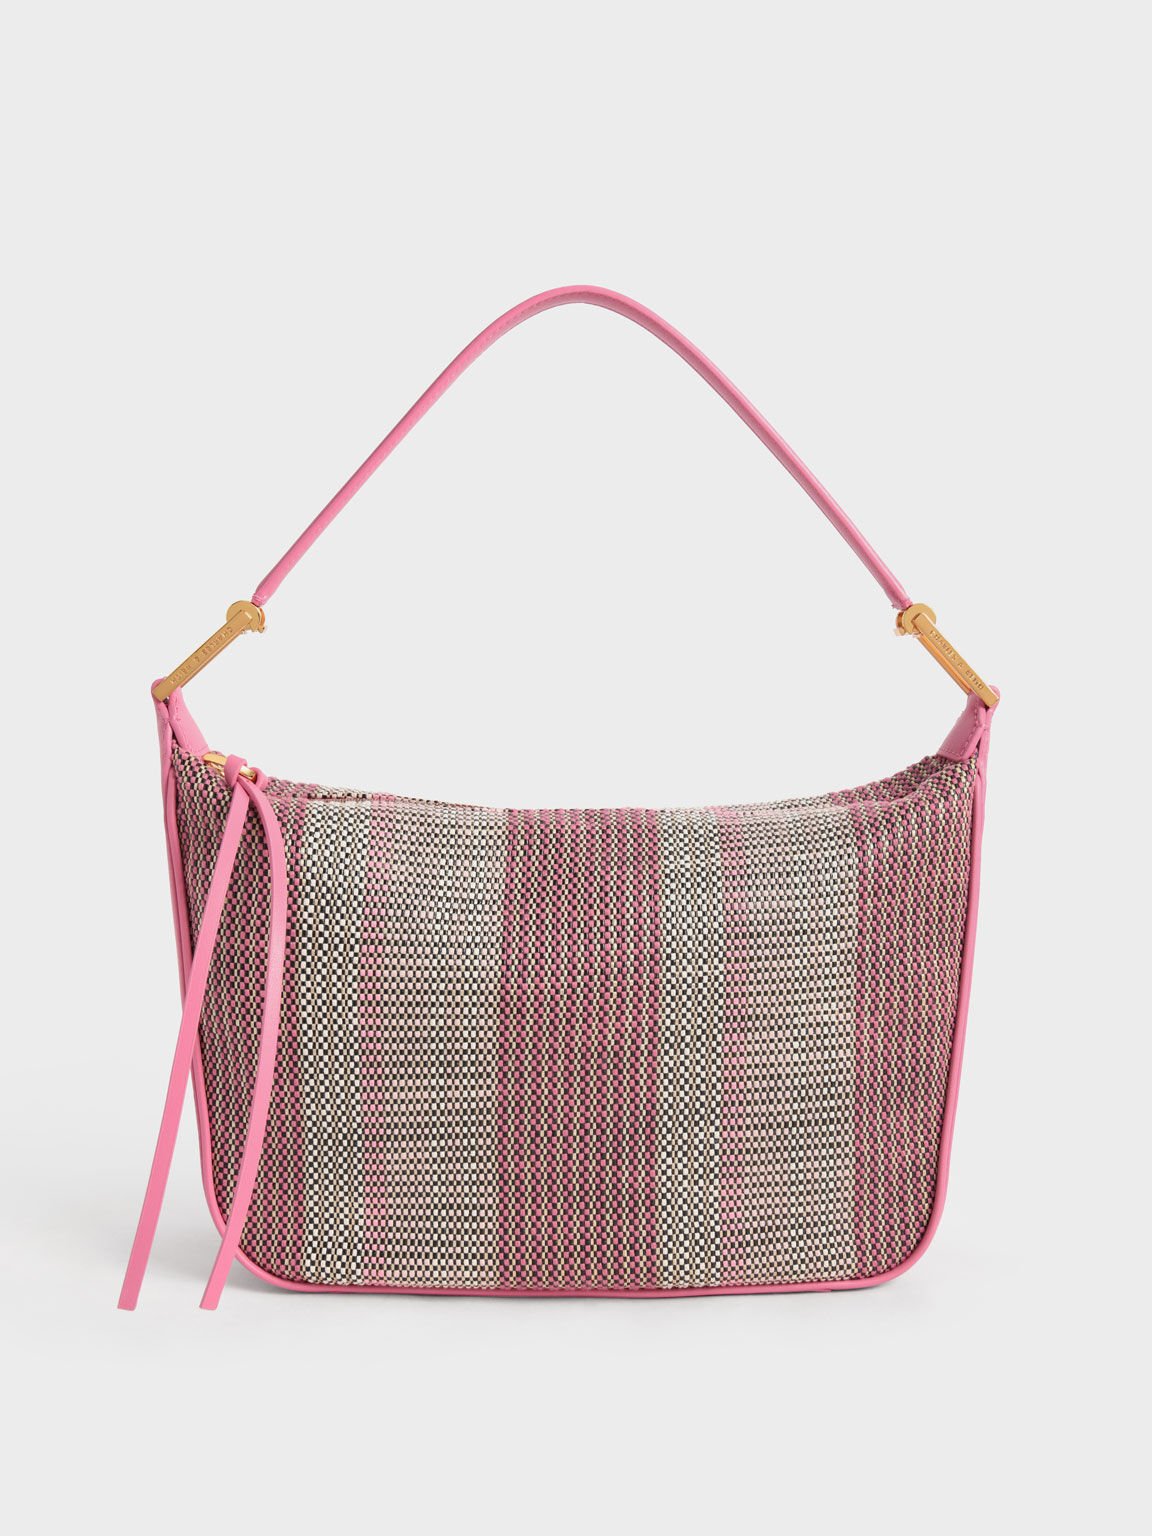 Koa 針織流浪包, 粉紅色, hi-res